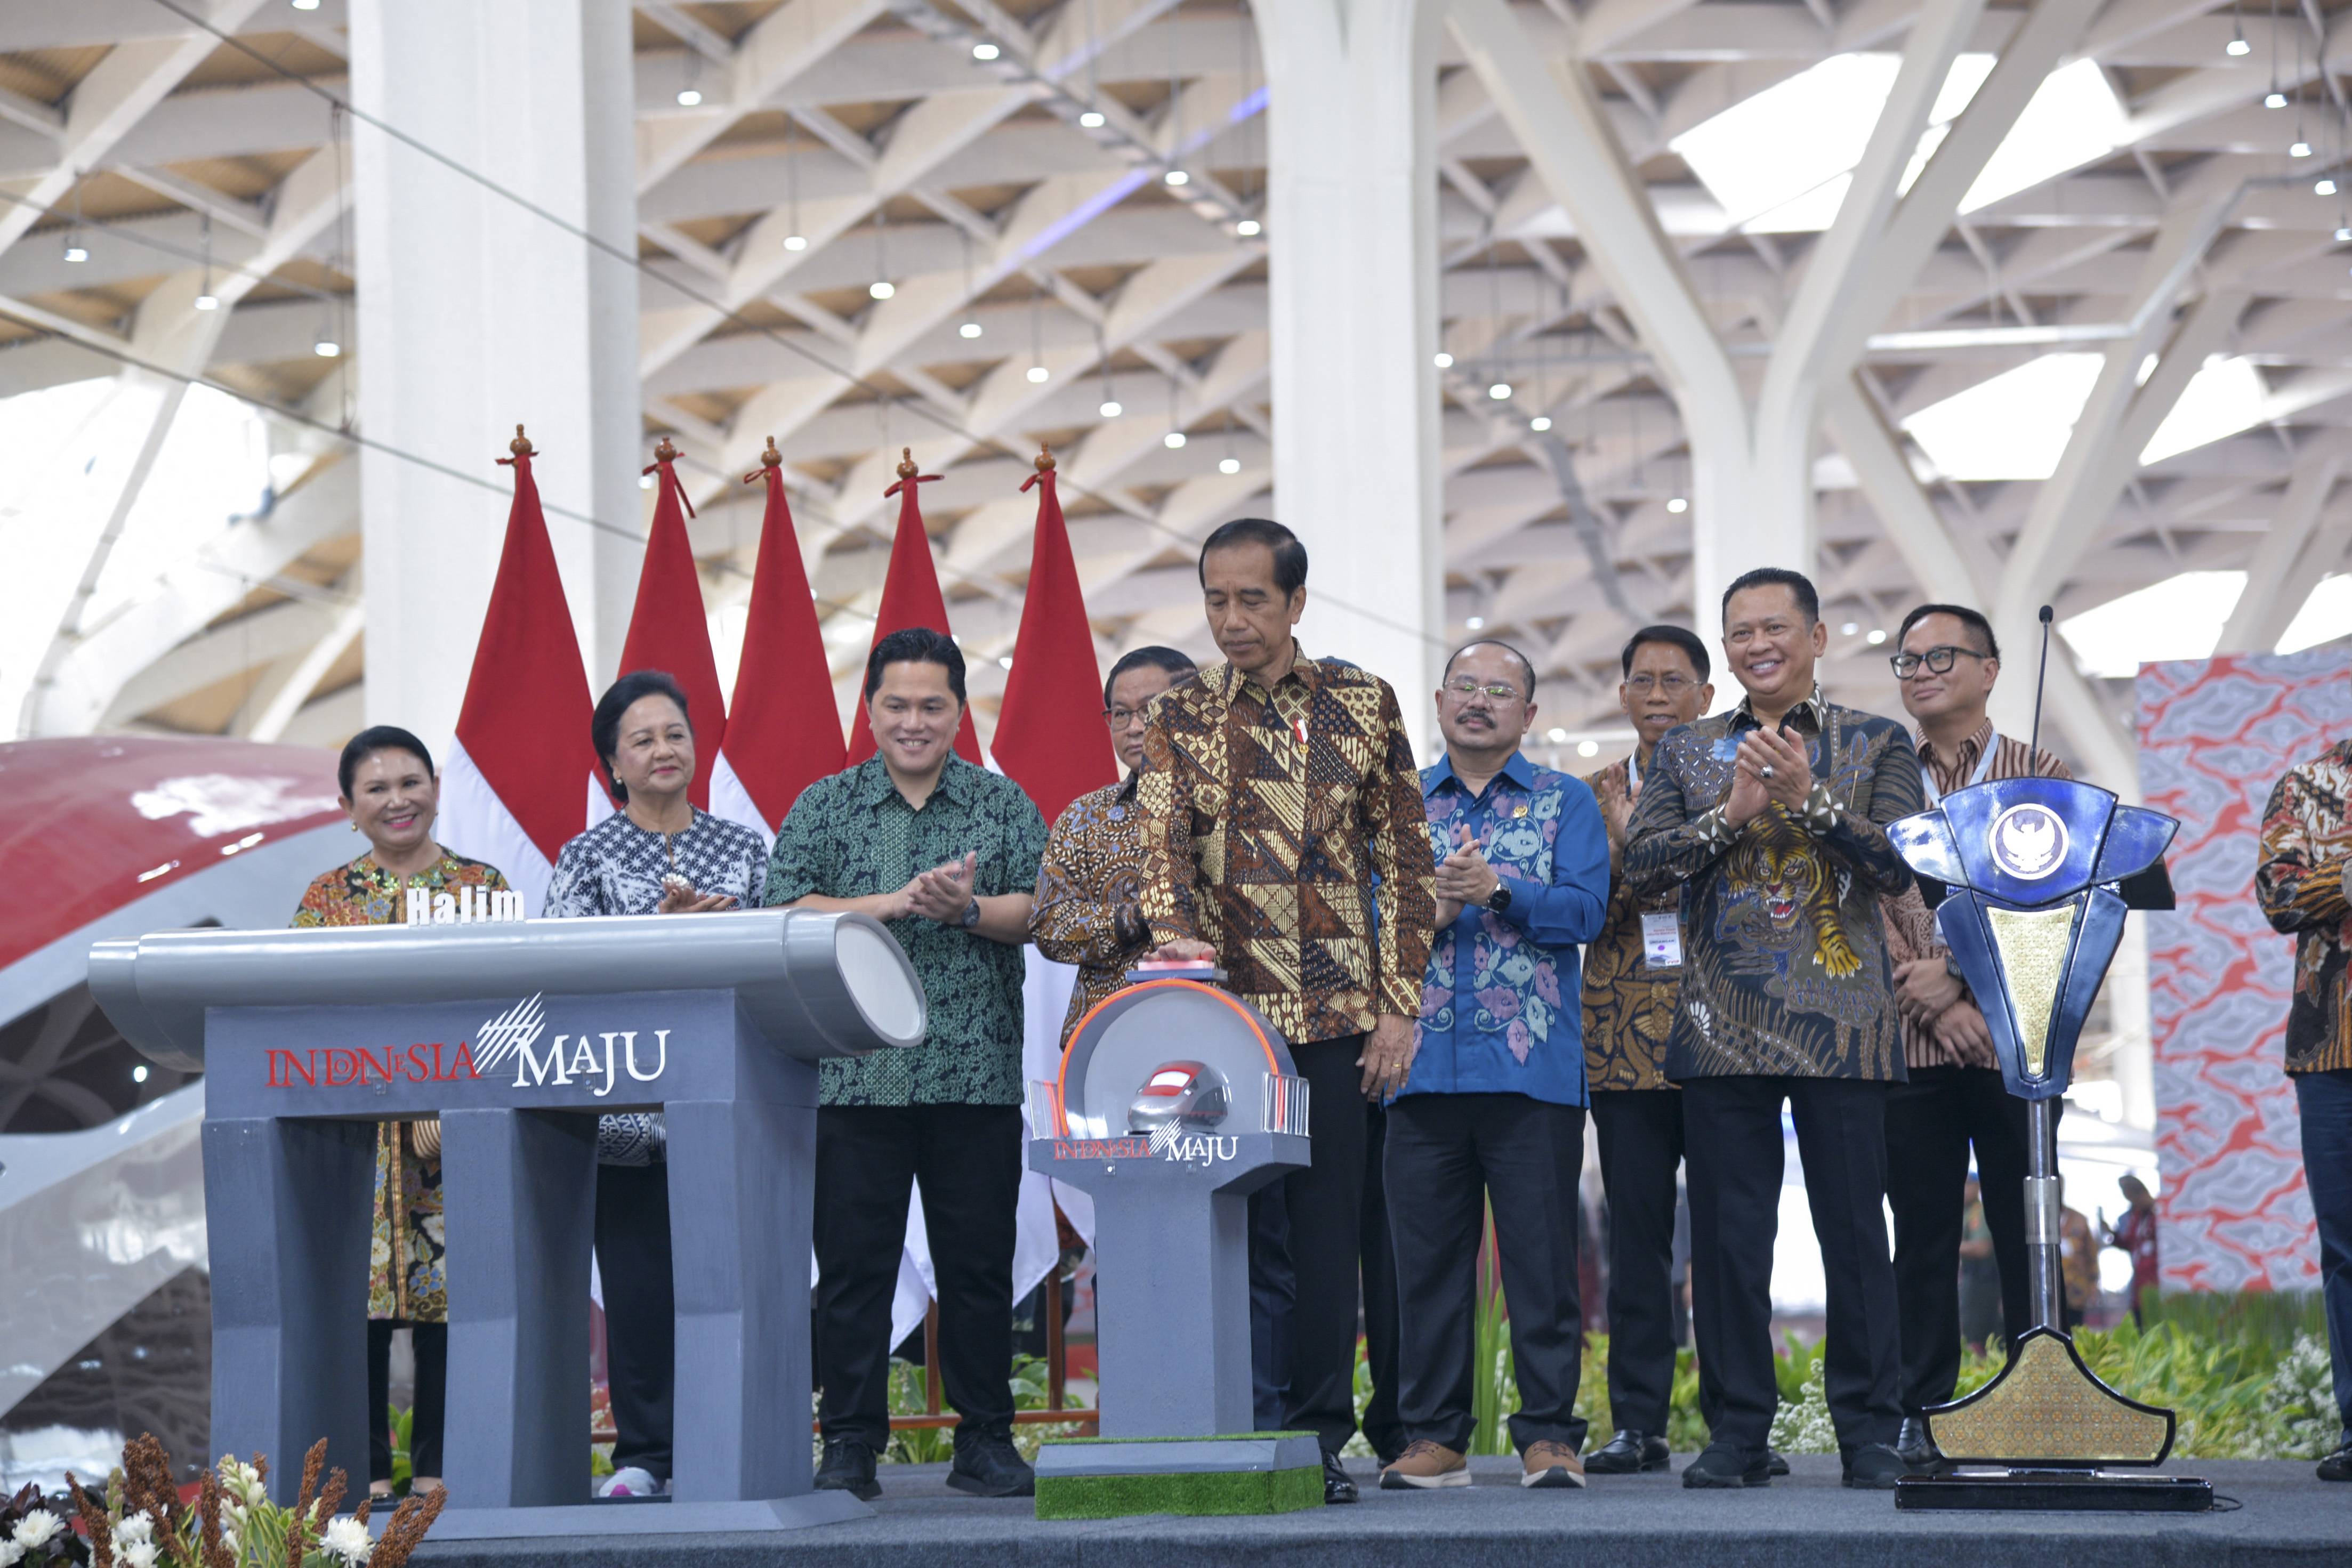 (国际·一周看天下)印尼总统佐科宣布雅万高铁正式启用